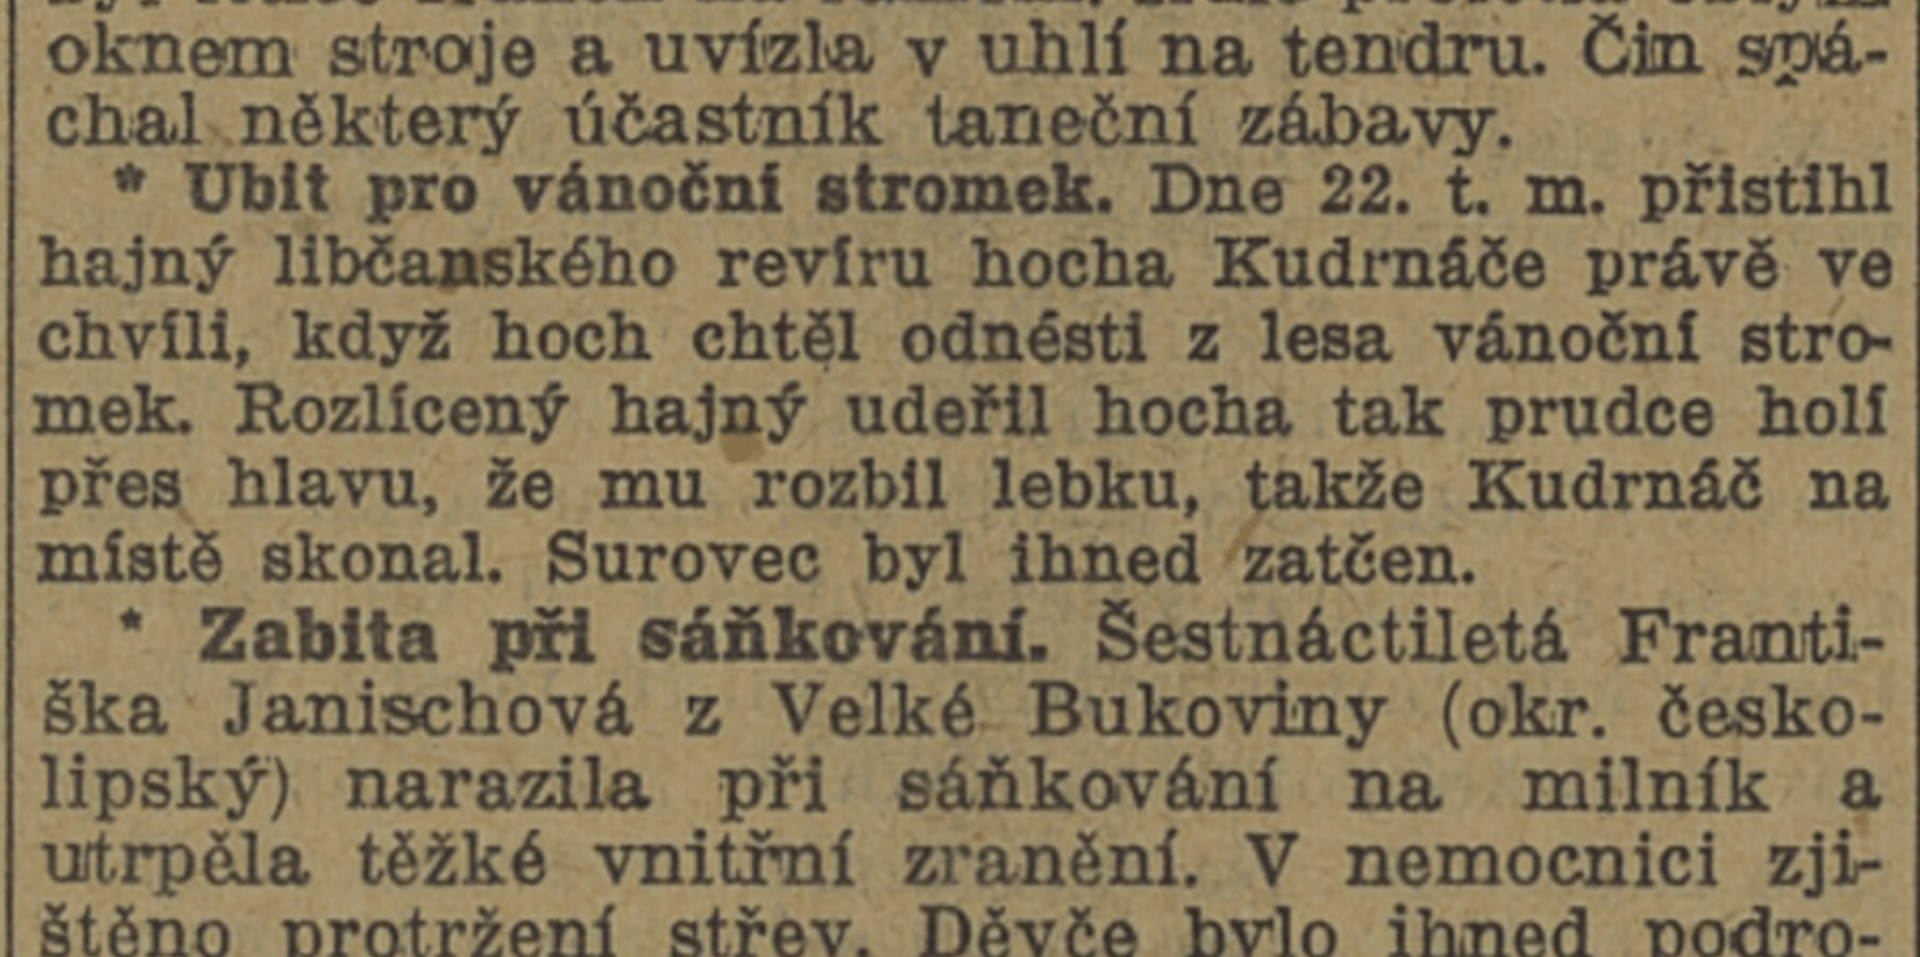 Lidové noviny, 31. 12. 1925. Zdroj Kramerius, Národní knihovna v Praze.